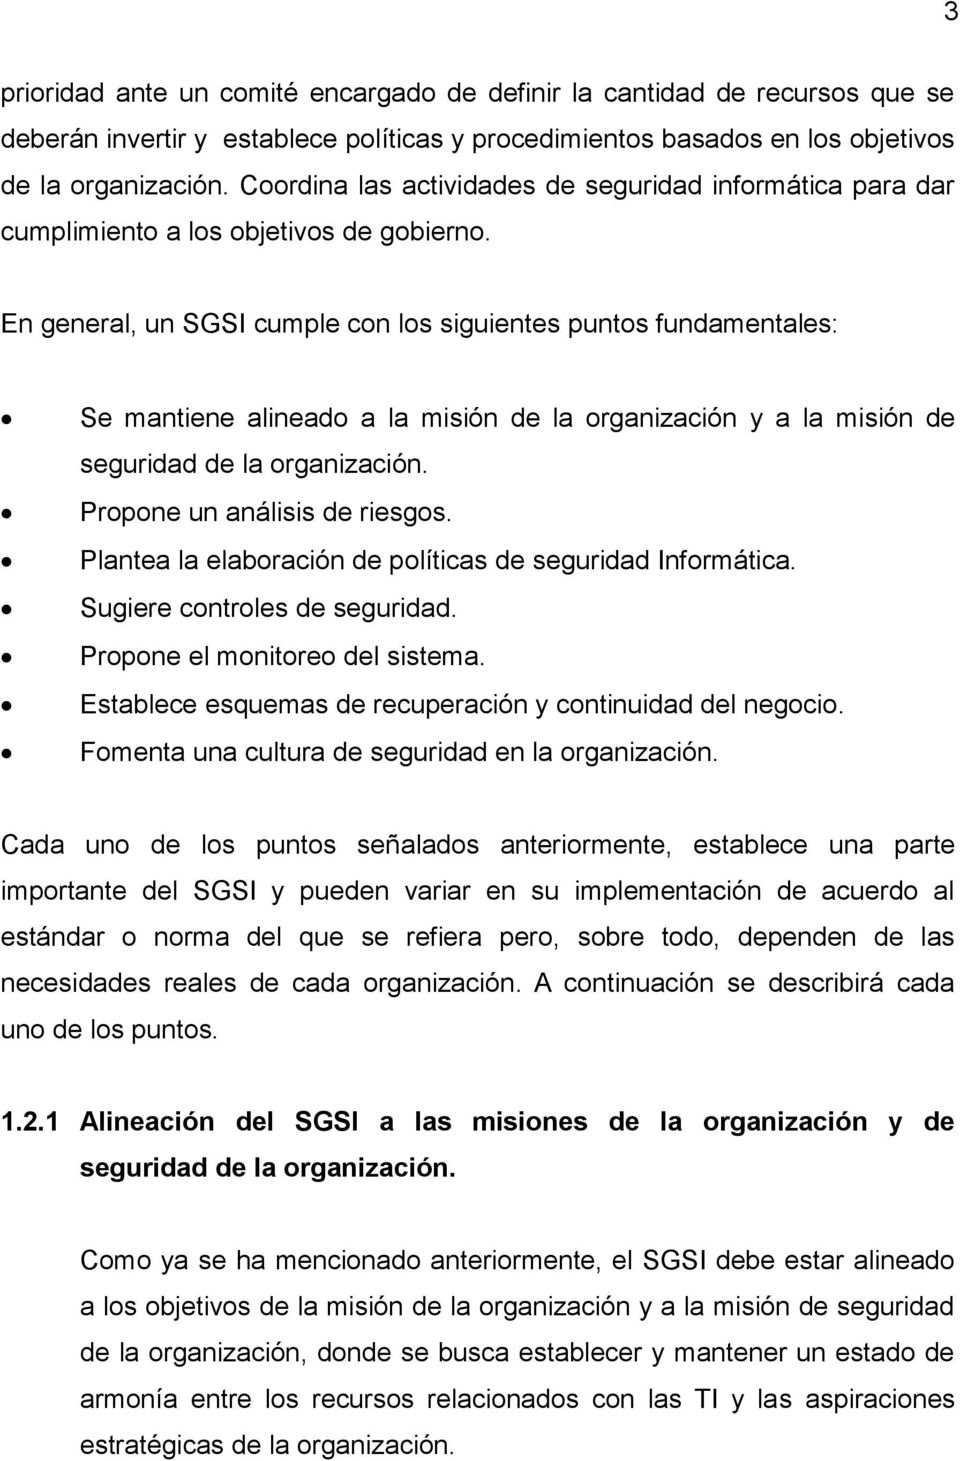 En general, un SGSI cumple con los siguientes puntos fundamentales: Se mantiene alineado a la misión de la organización y a la misión de seguridad de la organización. Propone un análisis de riesgos.